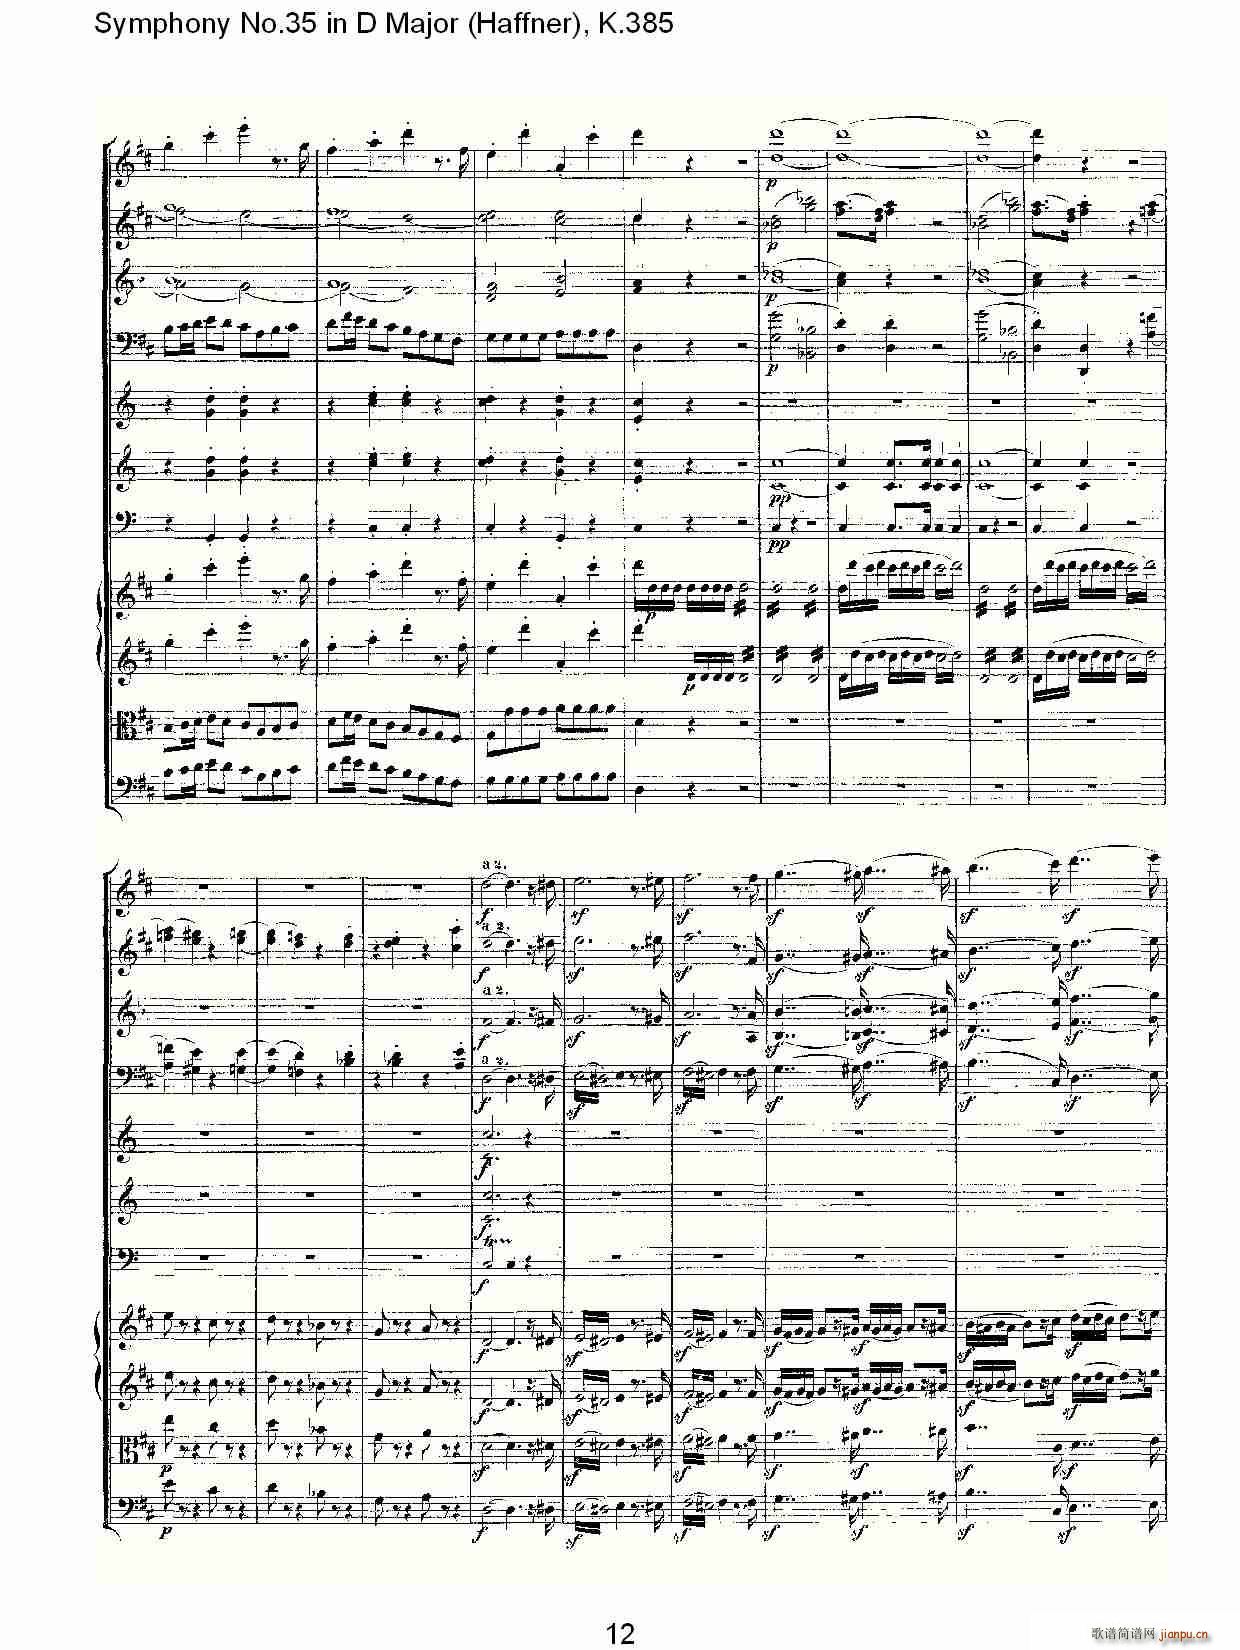 Symphony No.35 in D Major, K.385(ʮּ)12